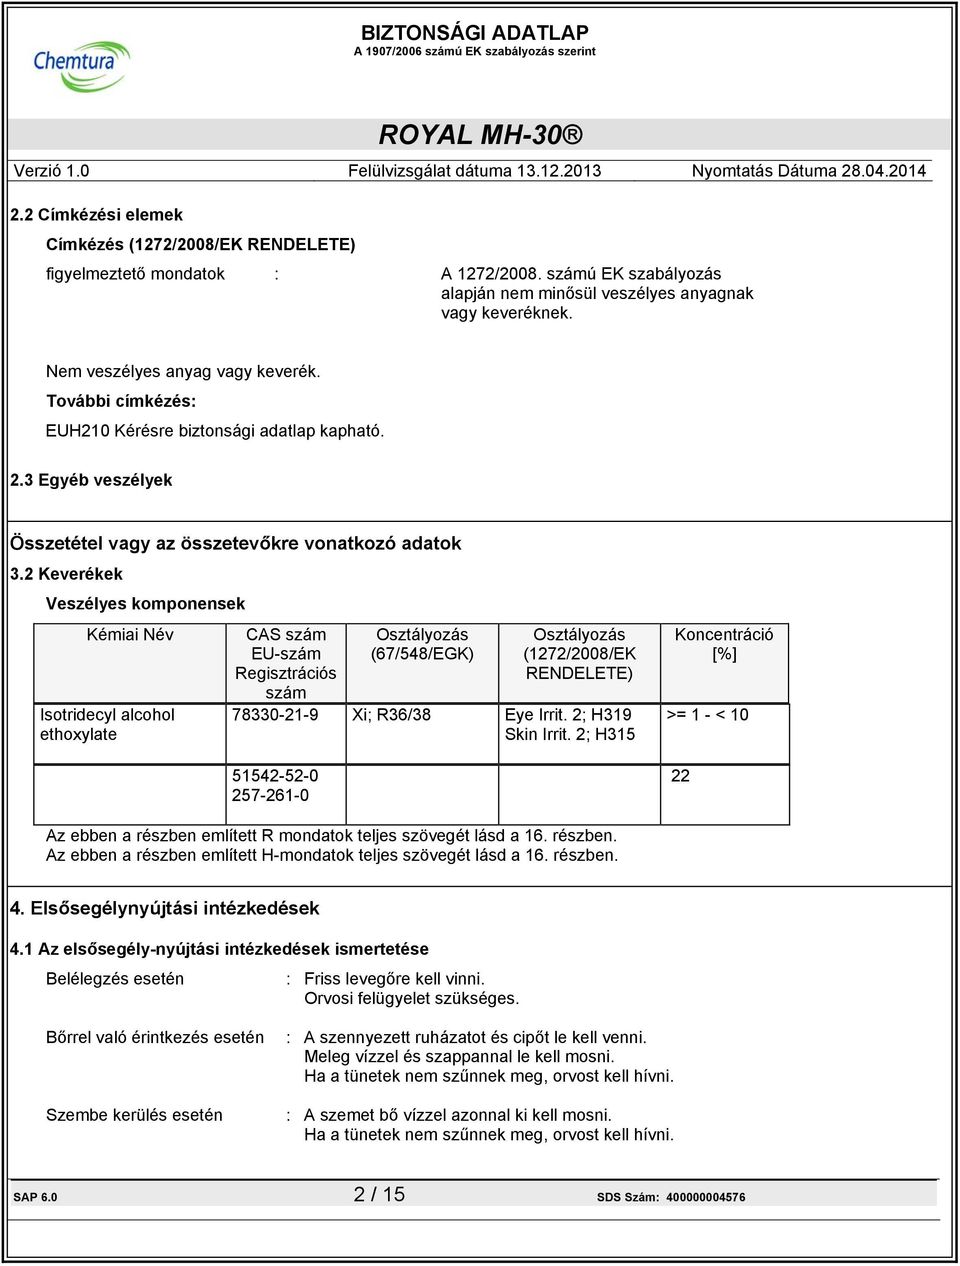 2 Keverékek Veszélyes komponensek Kémiai Név Isotridecyl alcohol ethoxylate CAS szám EU-szám Regisztrációs szám Osztályozás (67/548/EGK) Osztályozás (1272/2008/EK RENDELETE) 78330-21-9 Xi; R36/38 Eye